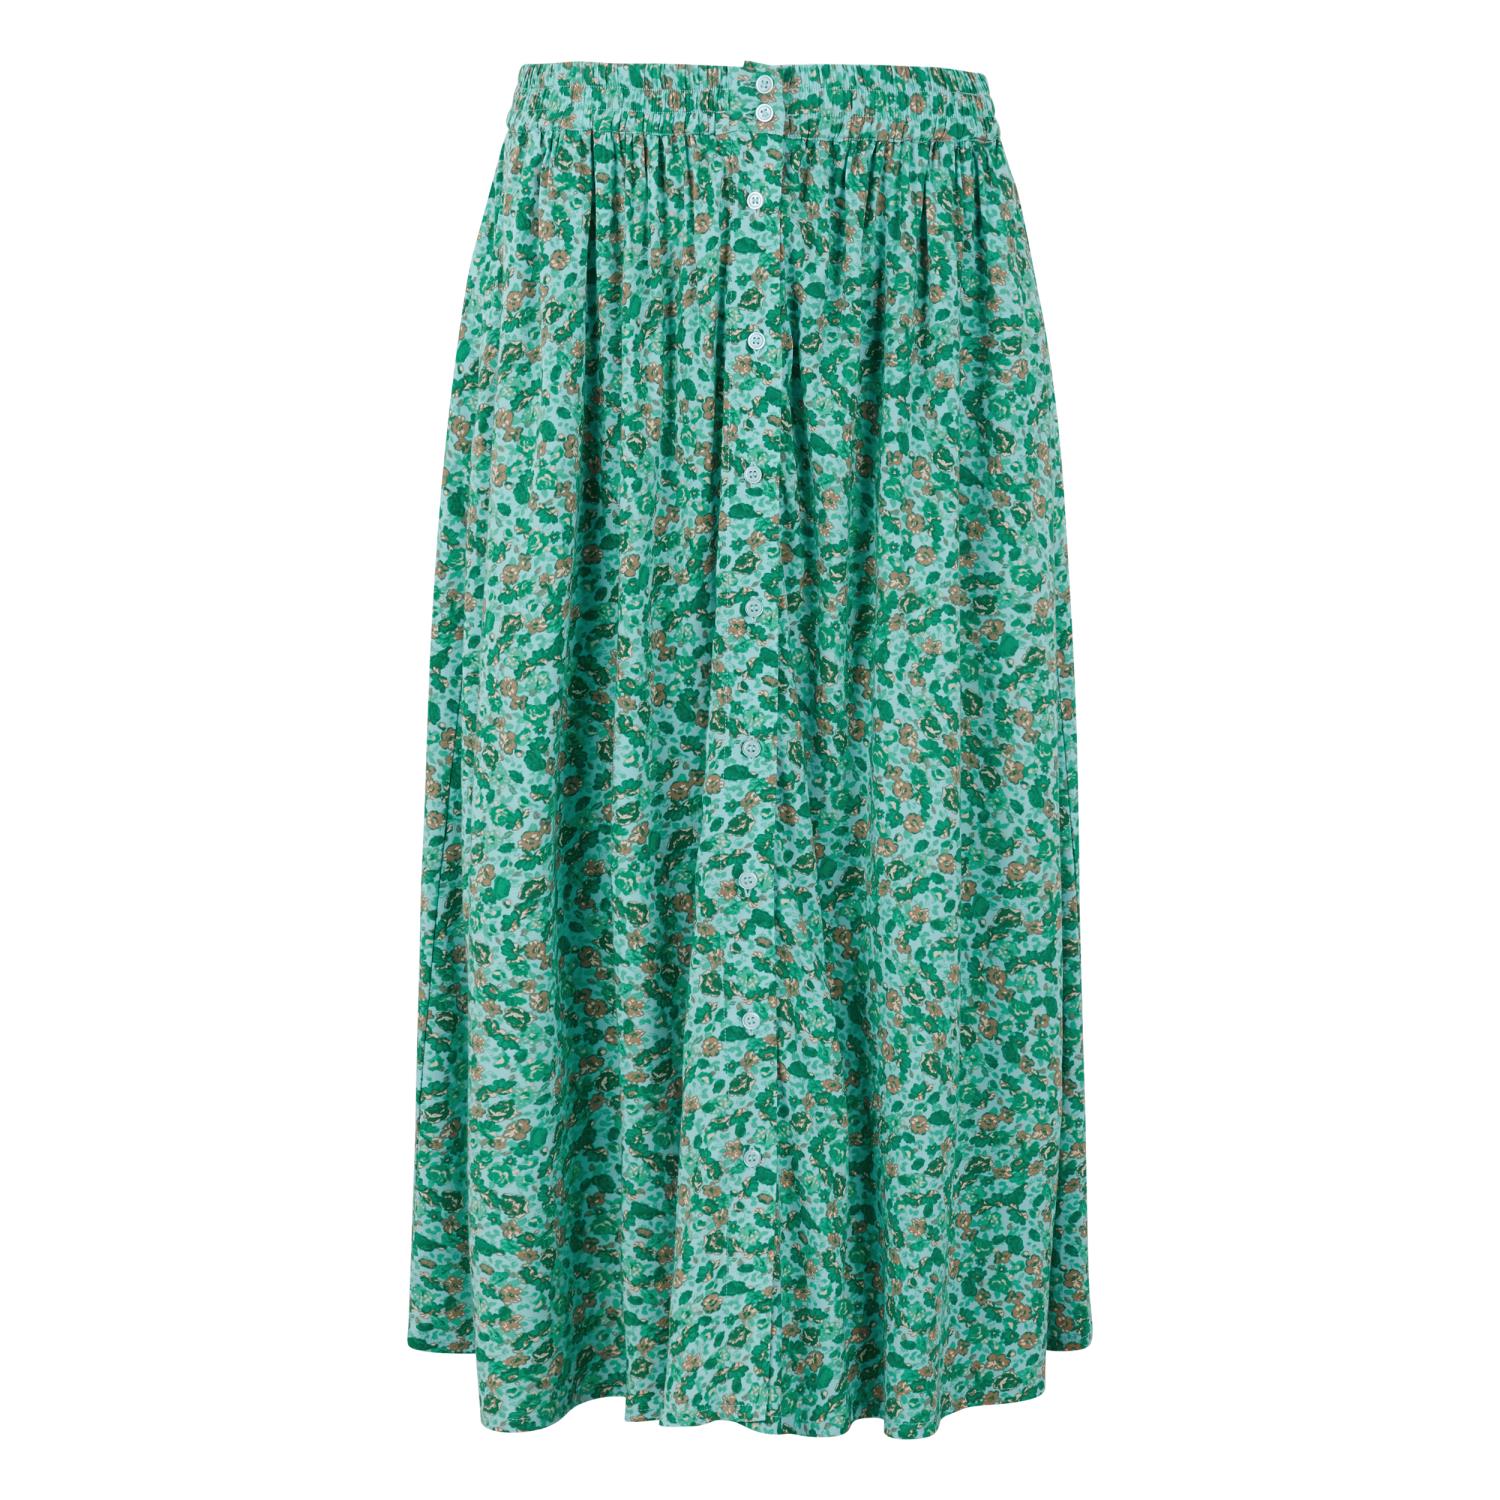 Soft Rebels Janni Midi Skirt, mønstret blå/grønn